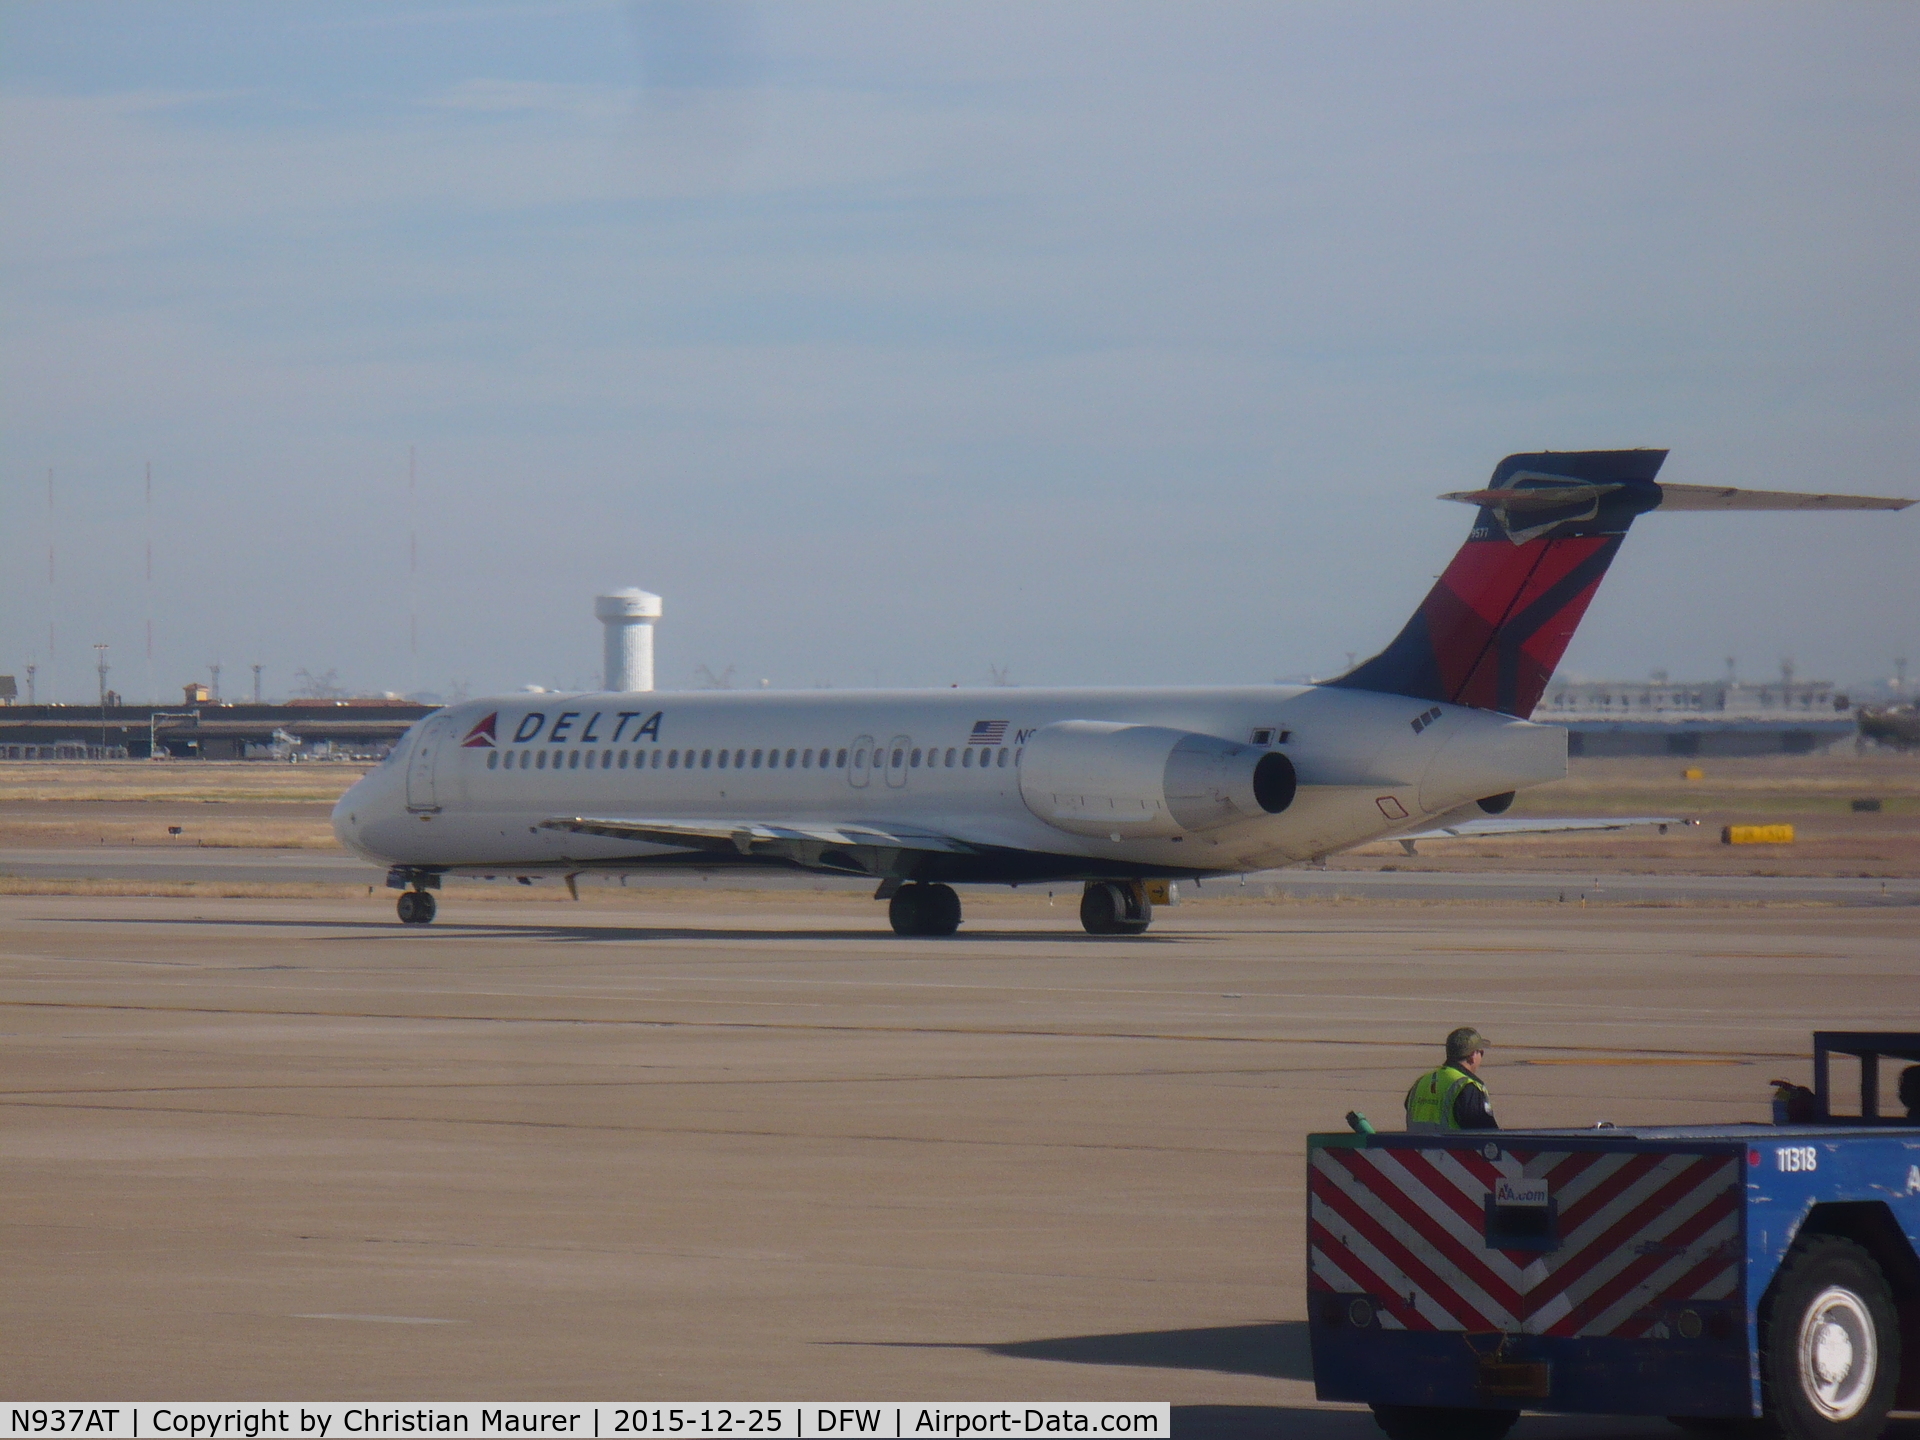 N937AT, 2001 Boeing 717-200 C/N 55091, Delta 717-200